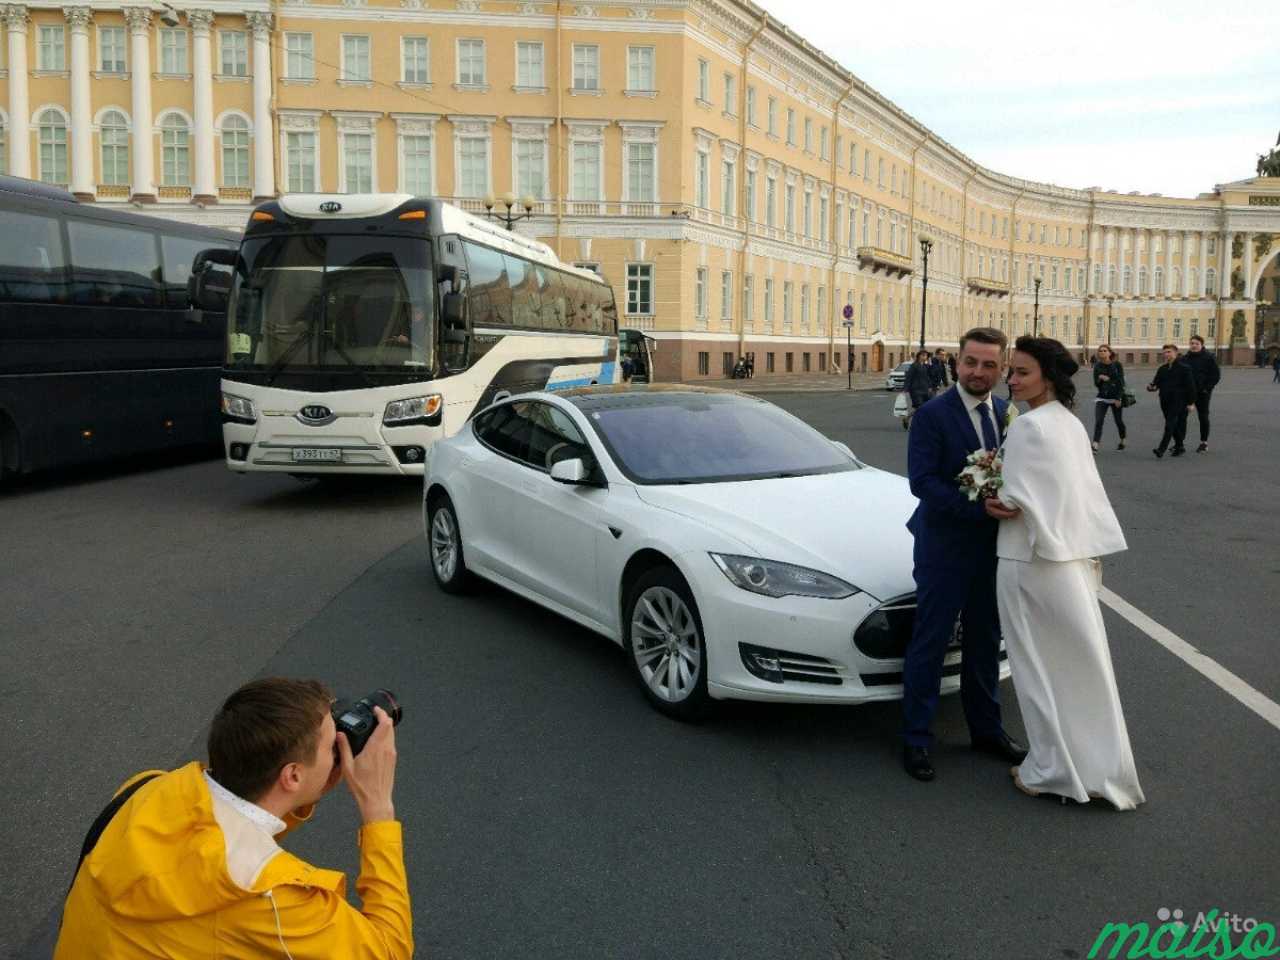 Аренда Теслы на свадьбу в Санкт-Петербурге. Фото 2